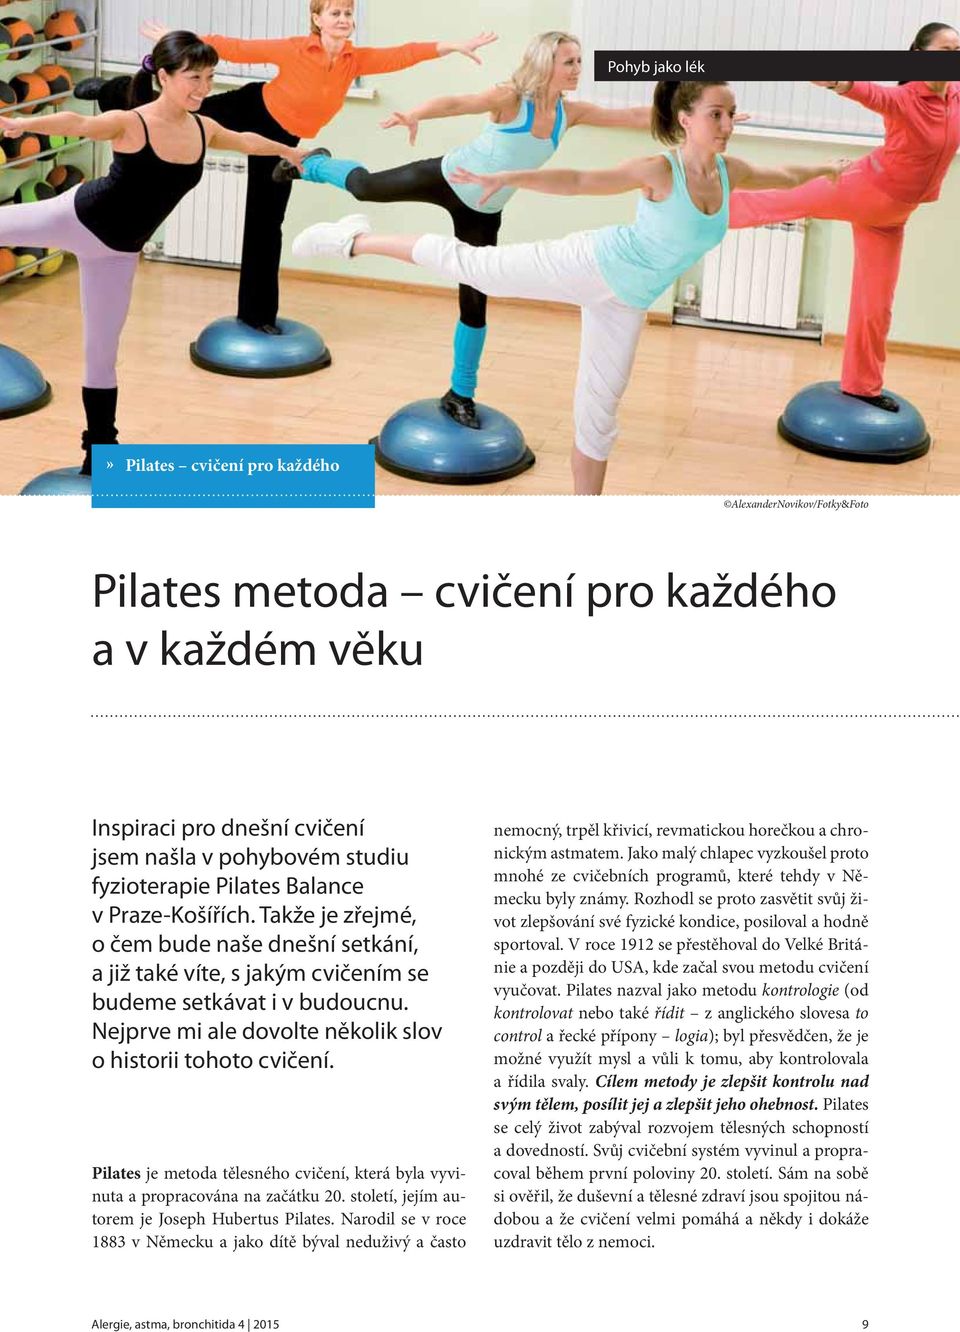 Pilates je metoda tělesného cvičení, která byla vyvinuta a propracována na začátku 20. století, jejím autorem je Joseph Hubertus Pilates.